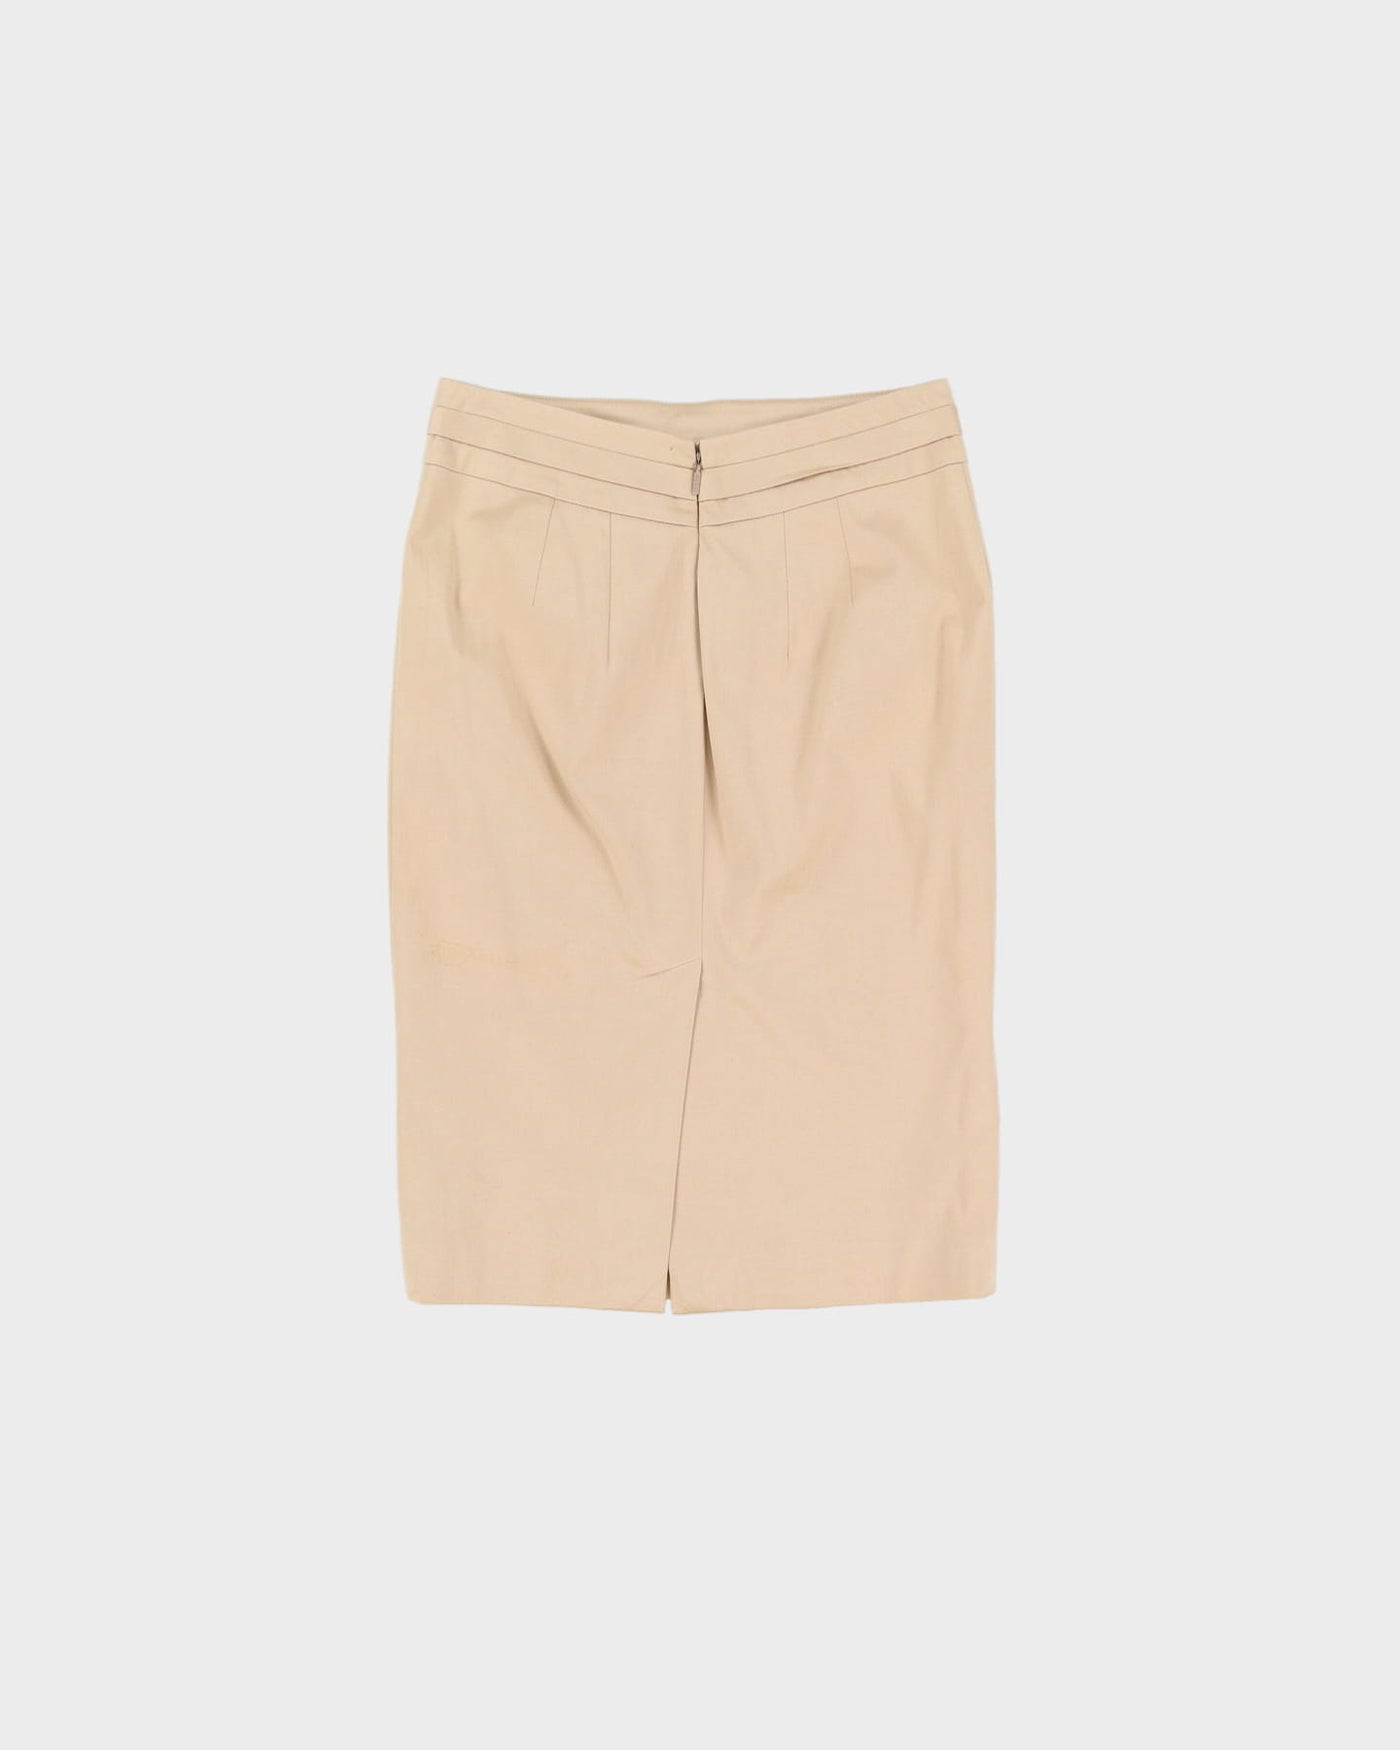 Gucci Beige Cotton Pencil Skirt- S